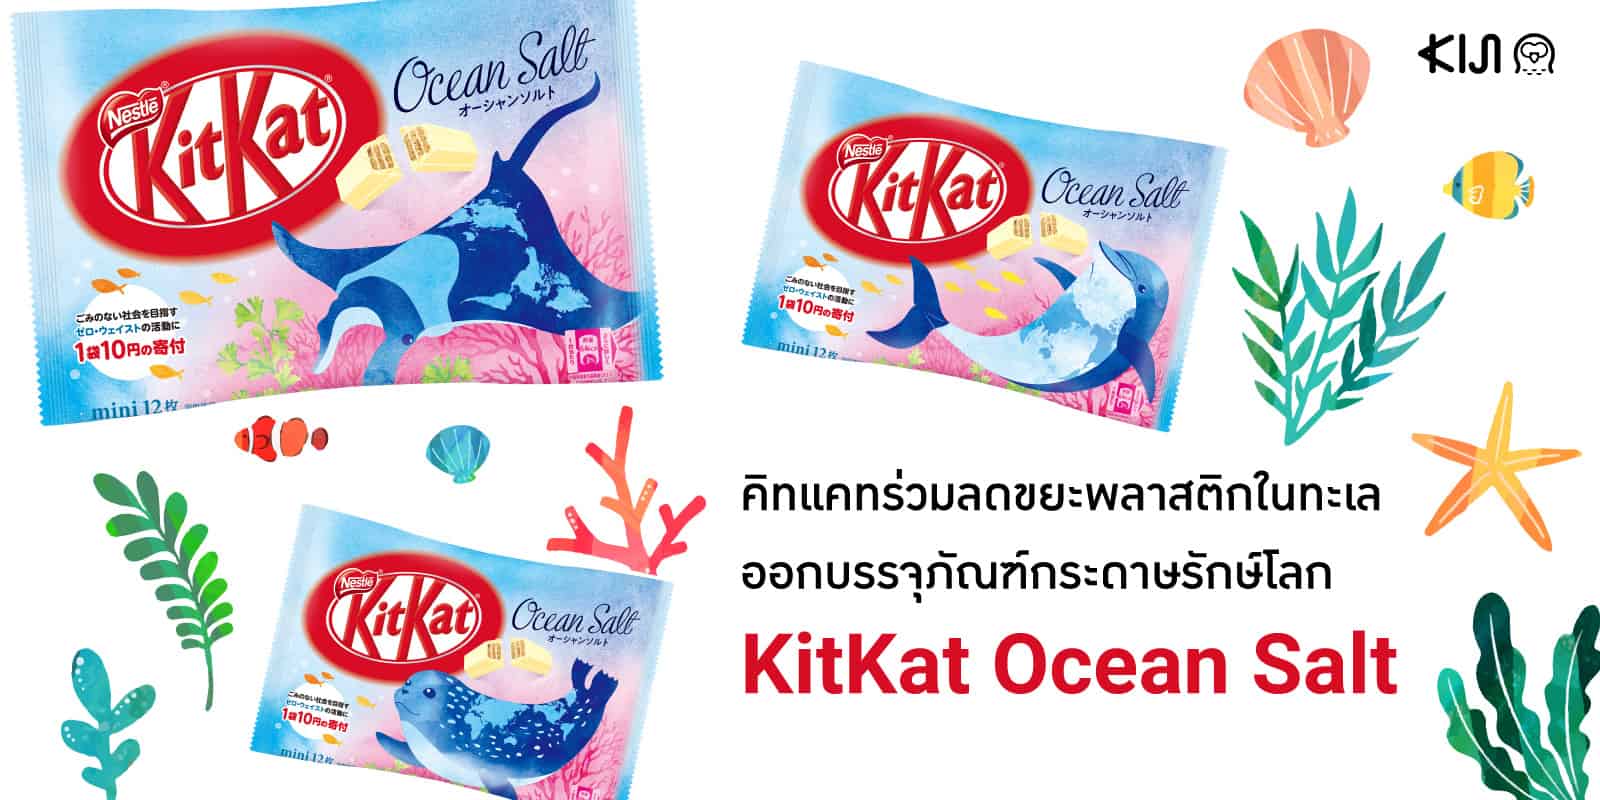 KitKat Ocean Salt เซ็ต KitKat บรรจุภัณฑ์กระดาษกับสัตว์ทะเลน่ารักทั้ง 4